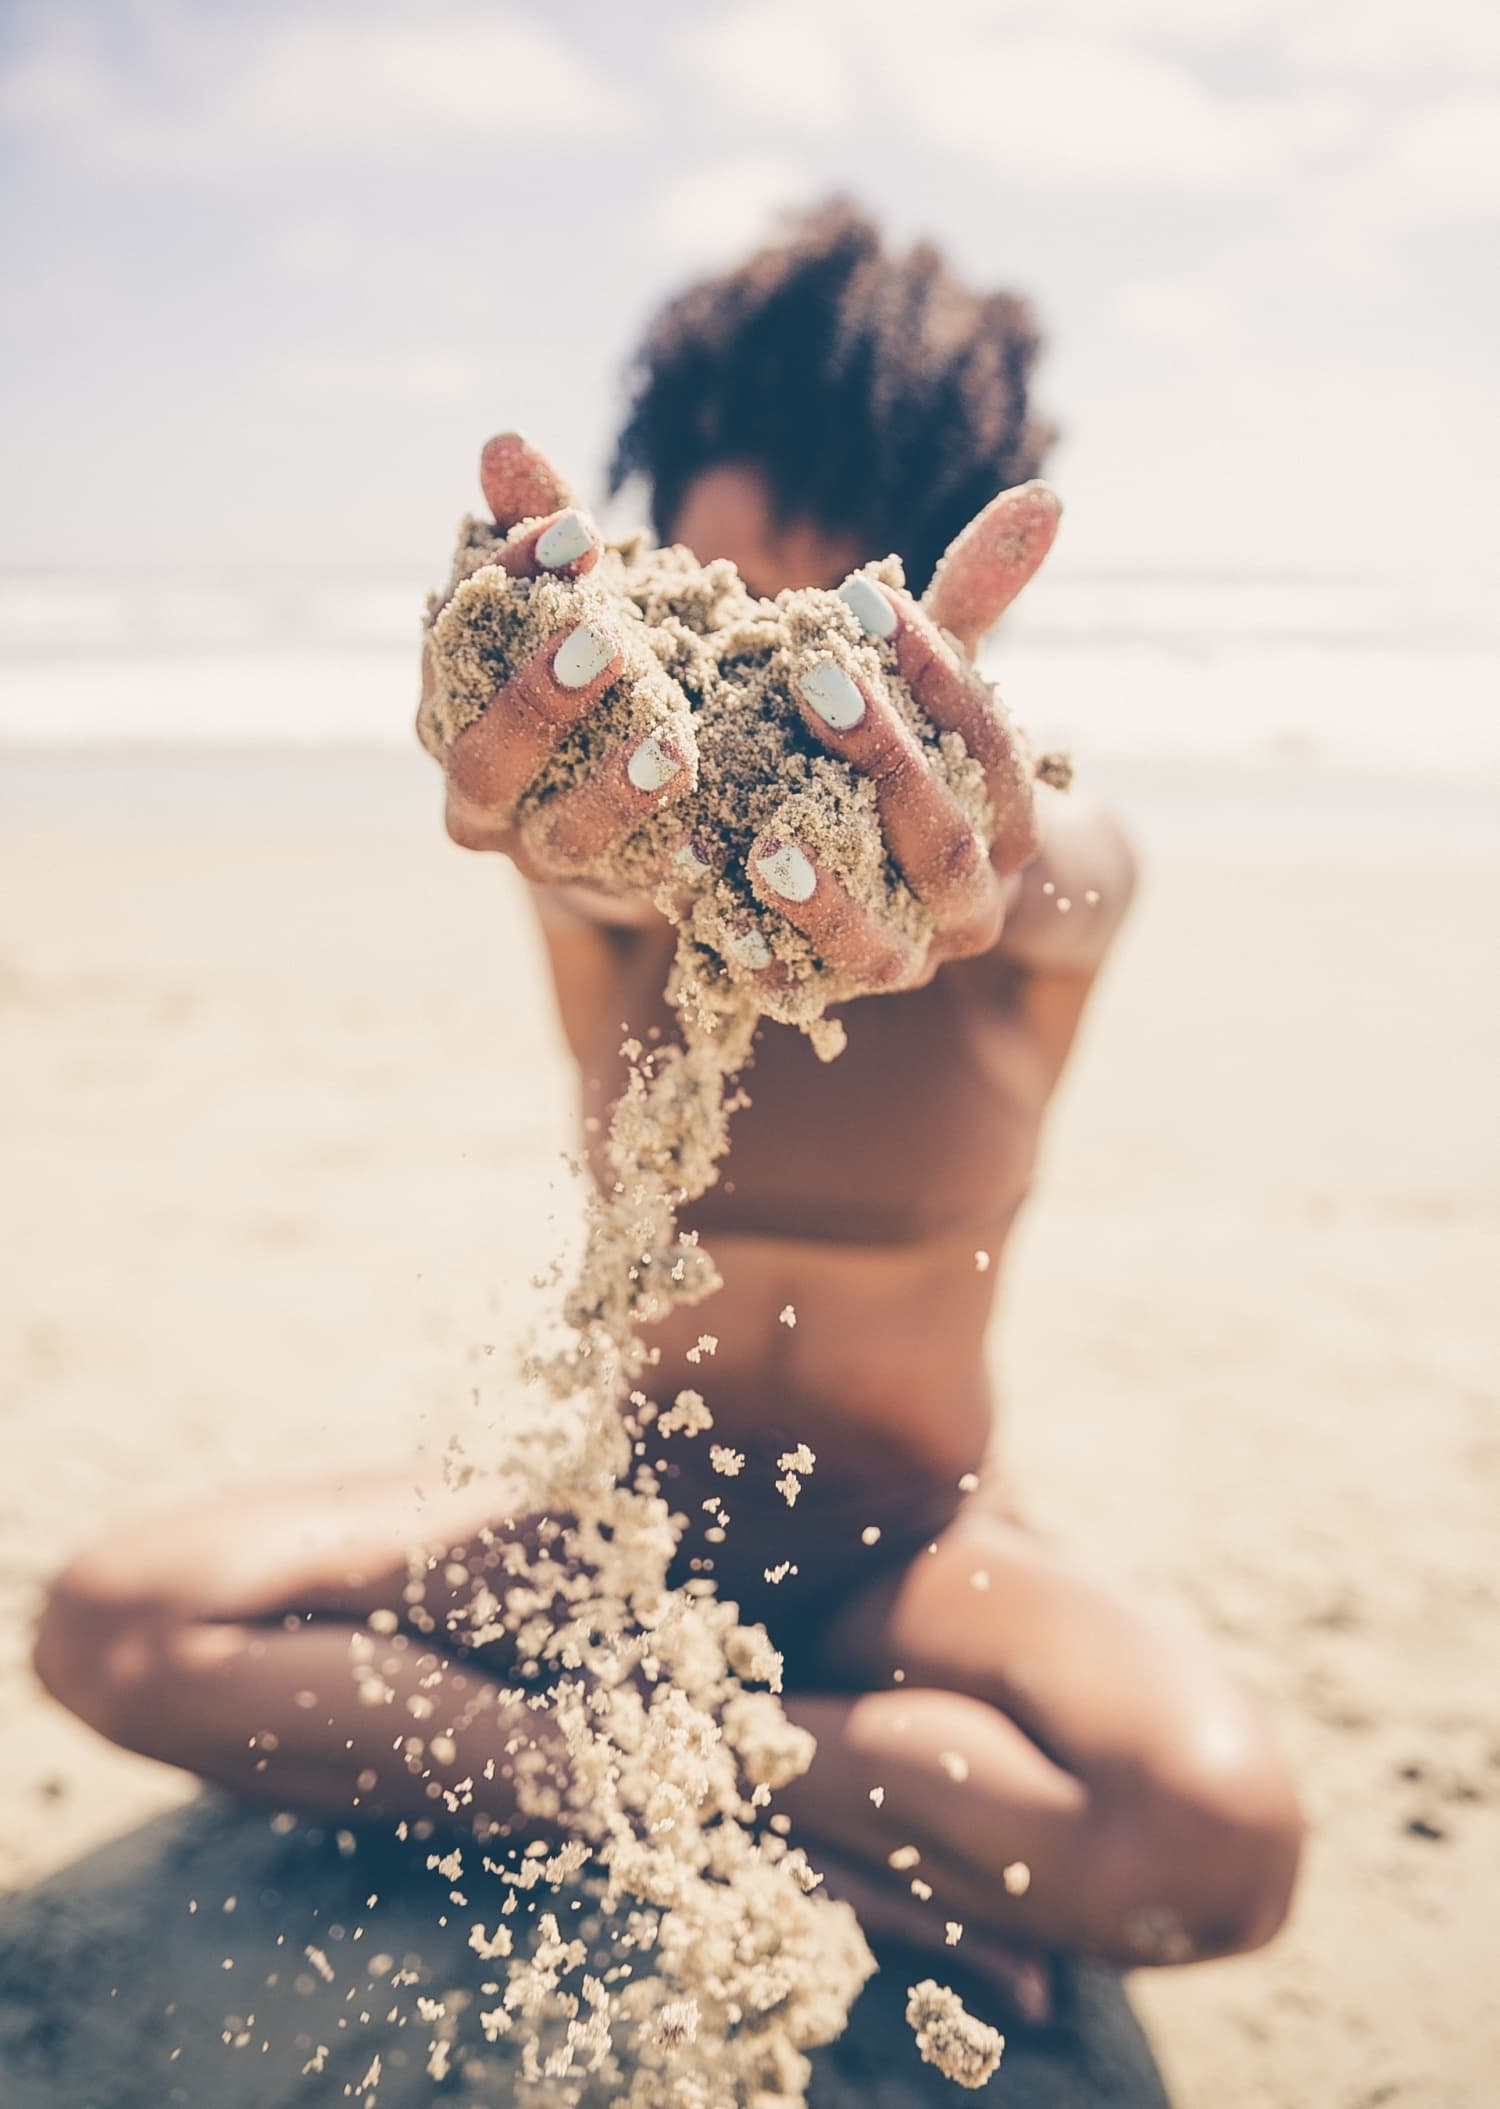 Kind spielt mit Sand an Strand